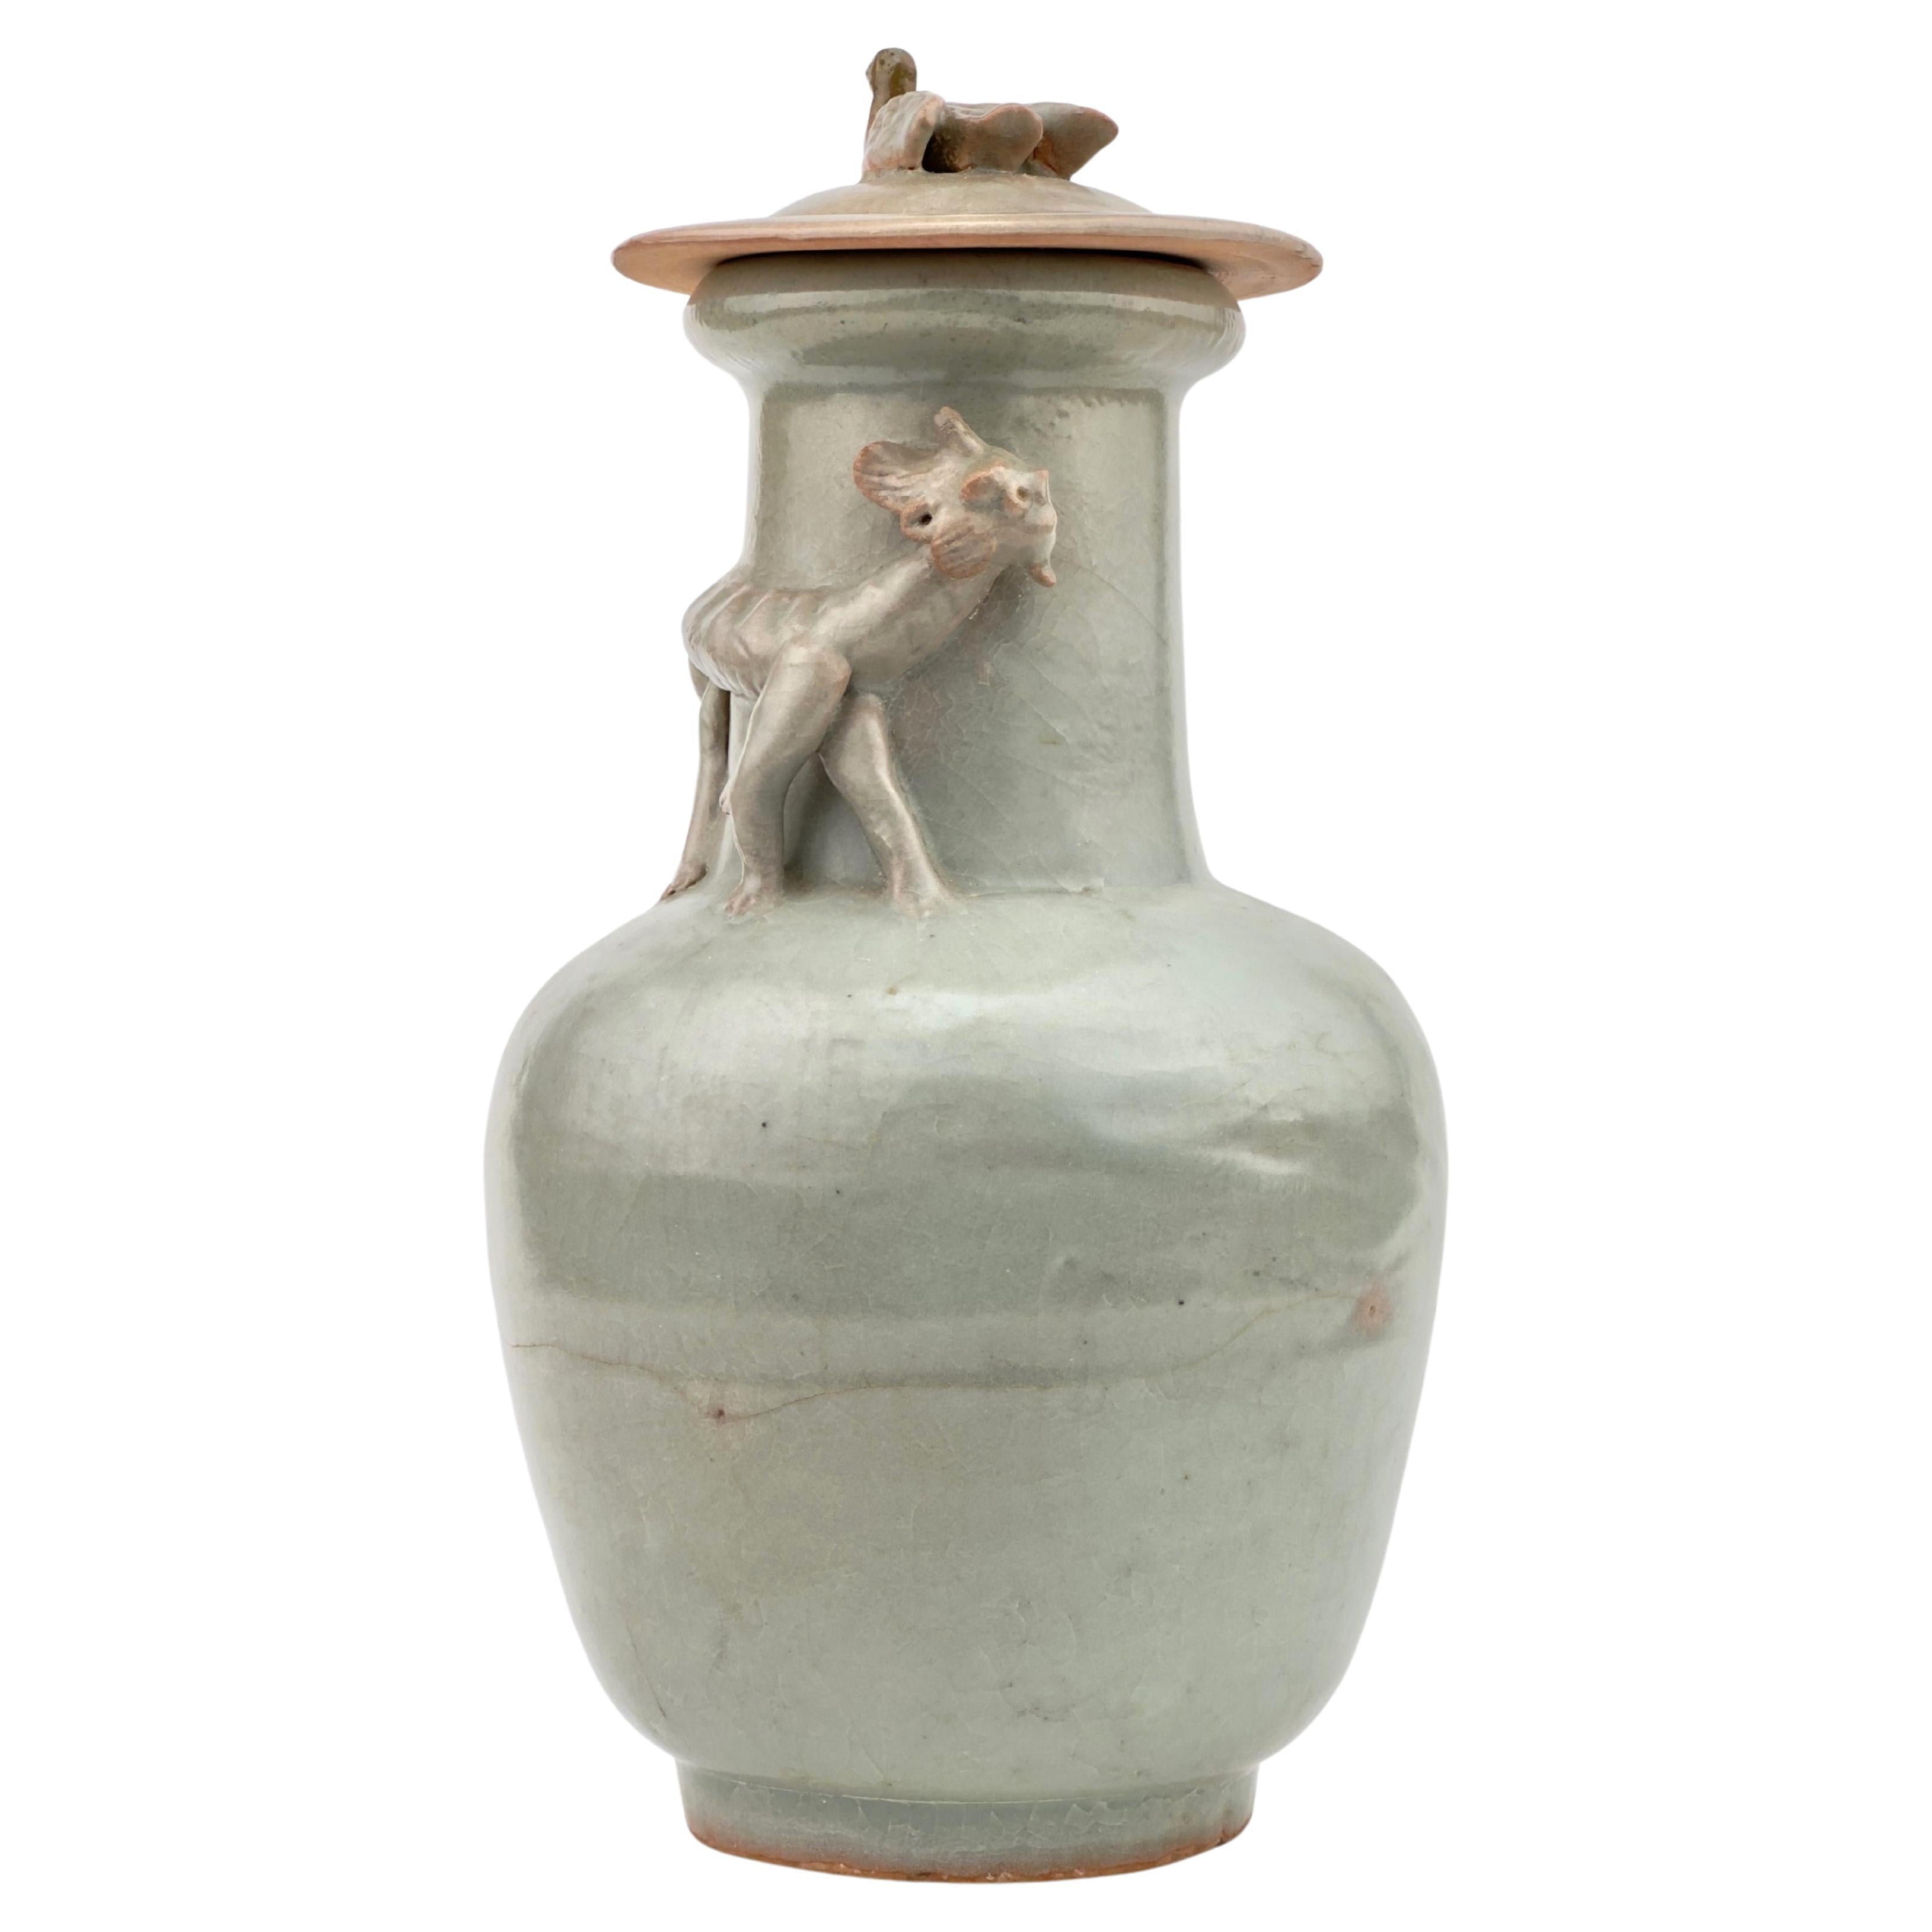 Longquan Celadon 'Dragon' Jar und Deckel, Song Dynasty(1127-1279)